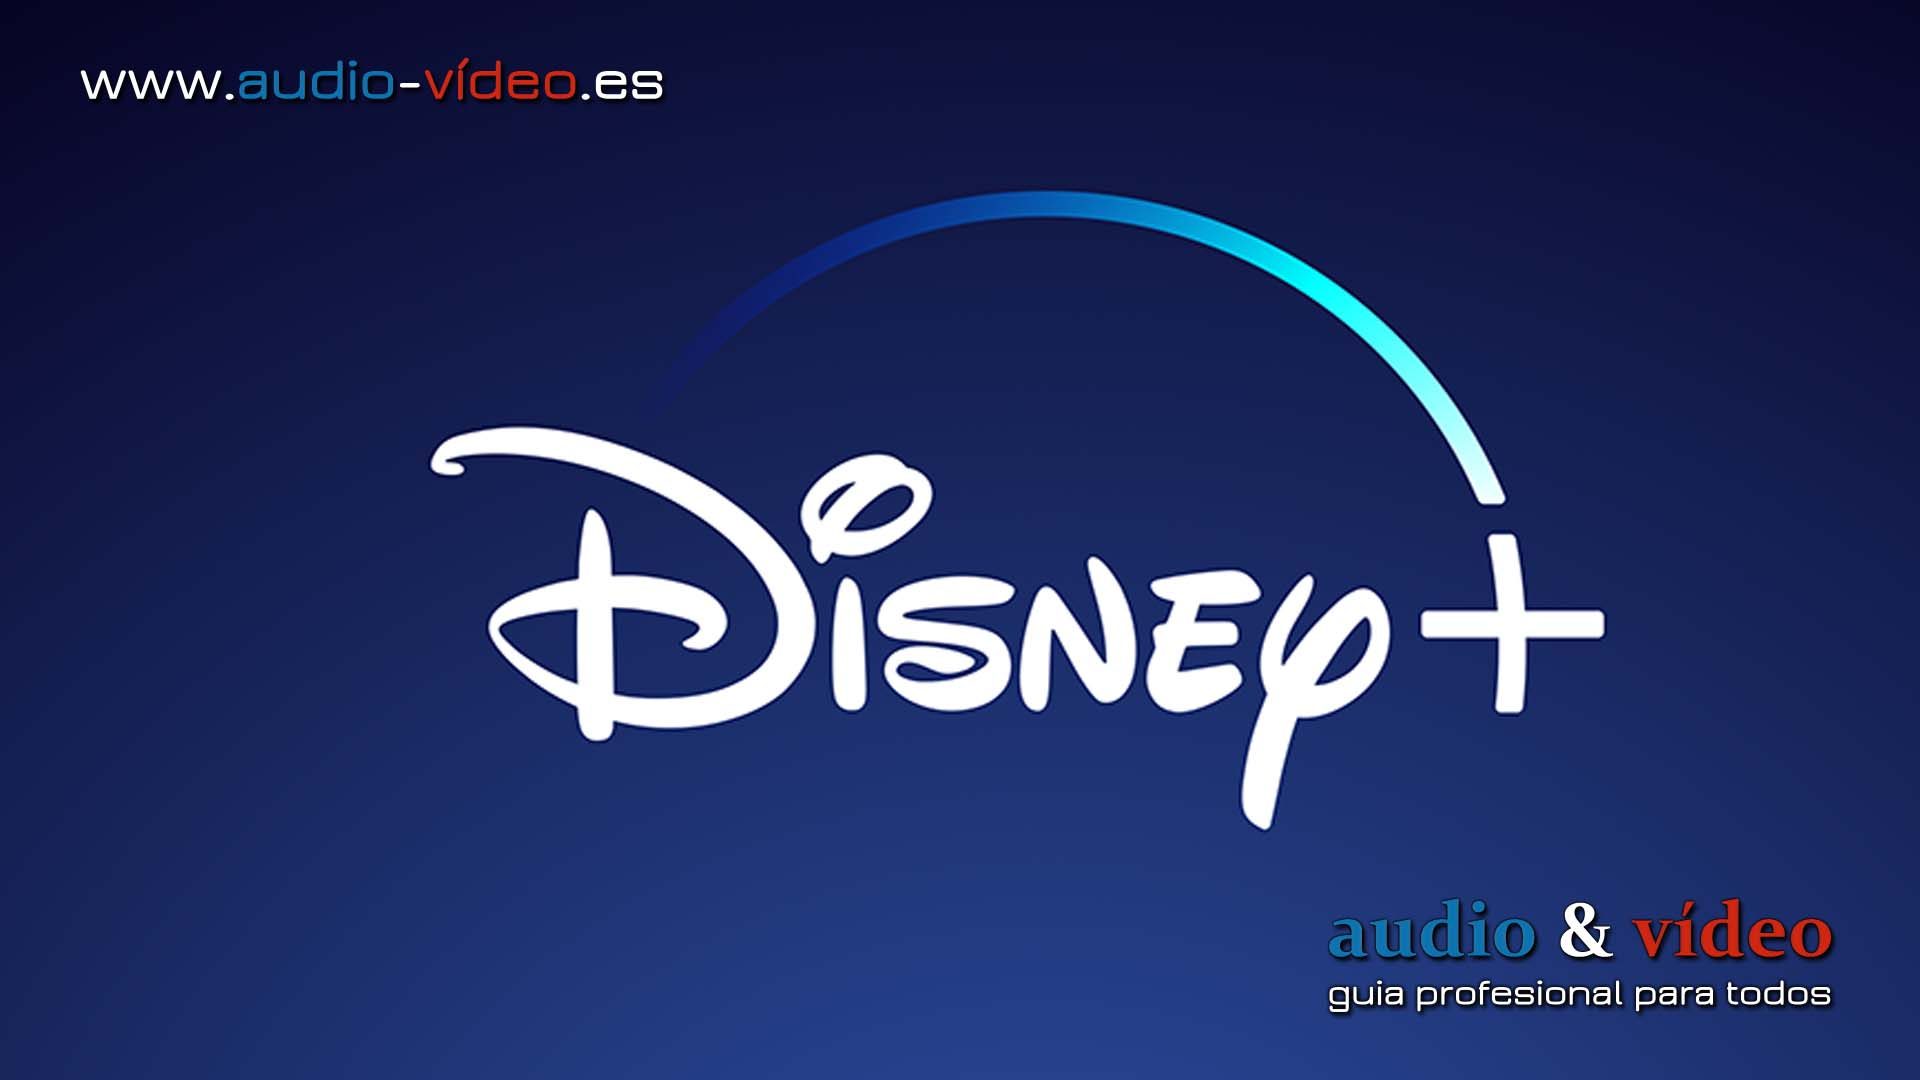 Disney+ está ampliando su oferta: nueva canal Star más – “Die Hard”, “X-Files”, “Lost”, “Alien”